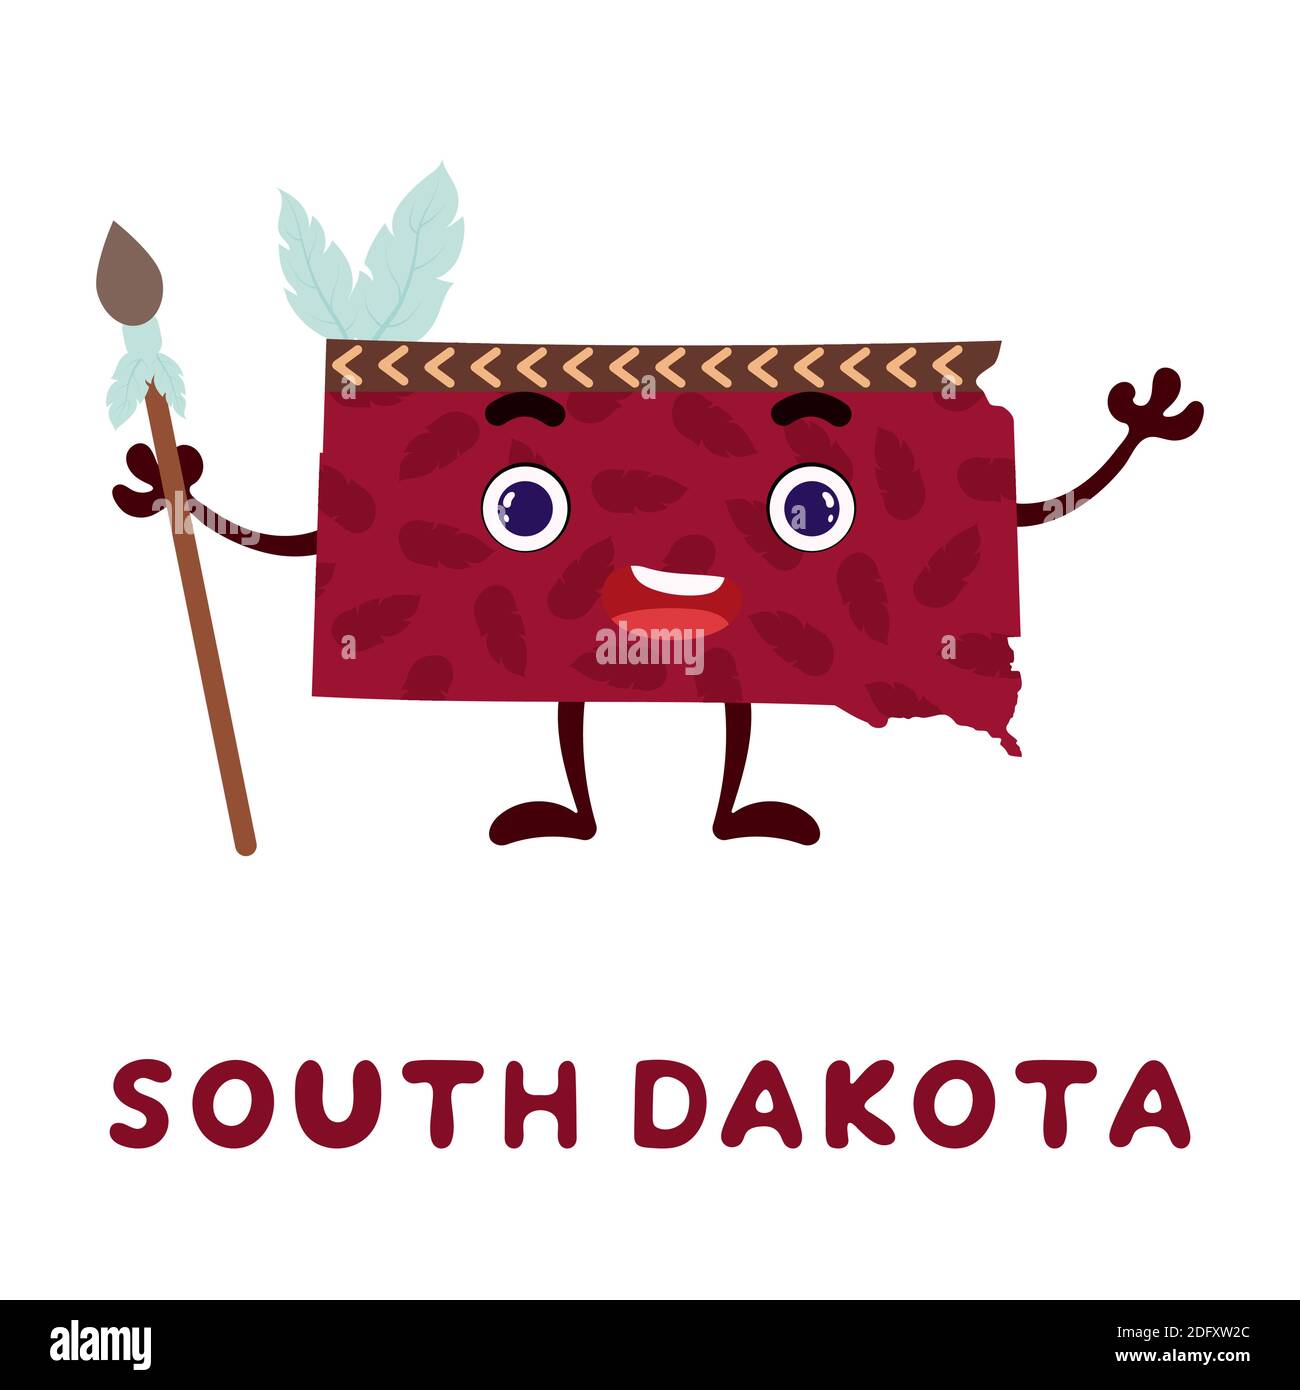 Niedliche Cartoon South Dakota Staat Charakter Cliparts. Illustrierte Karte des Bundesstaates South Dakota von USA mit Staatsname. Lustiges Charakter-Design für Kinder Stock Vektor